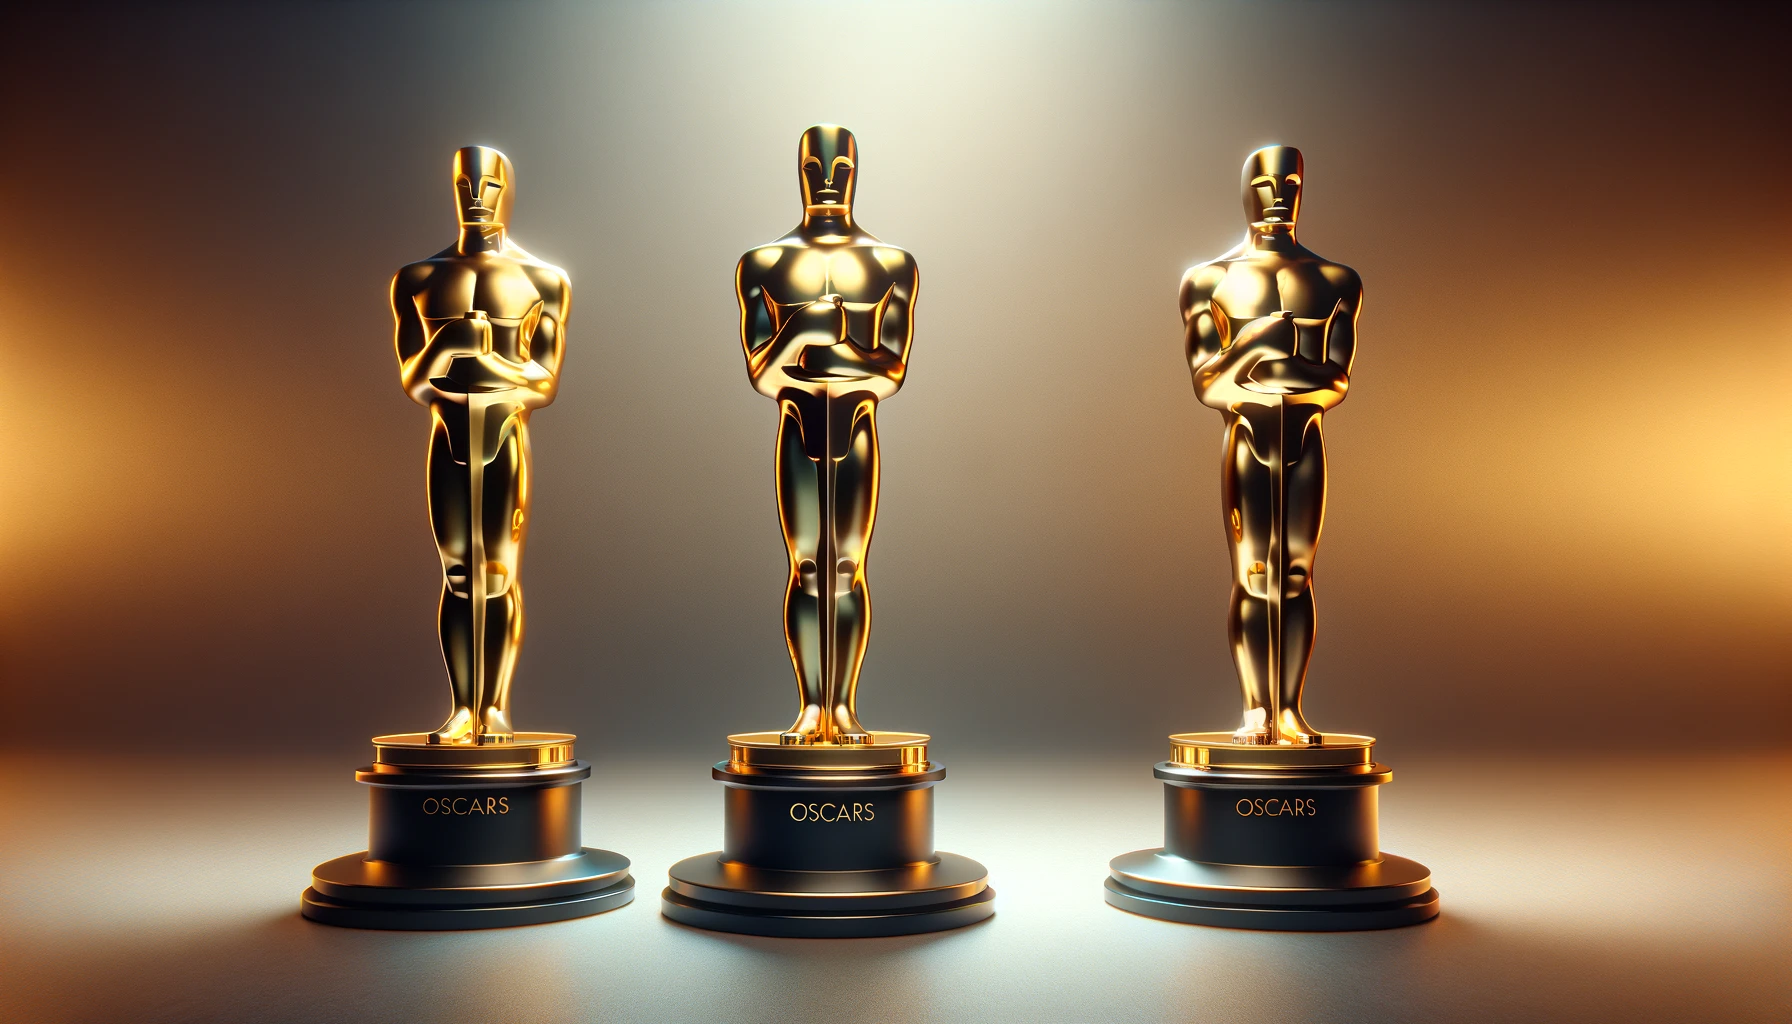 3 Oscars against an aesthetically pleasing background